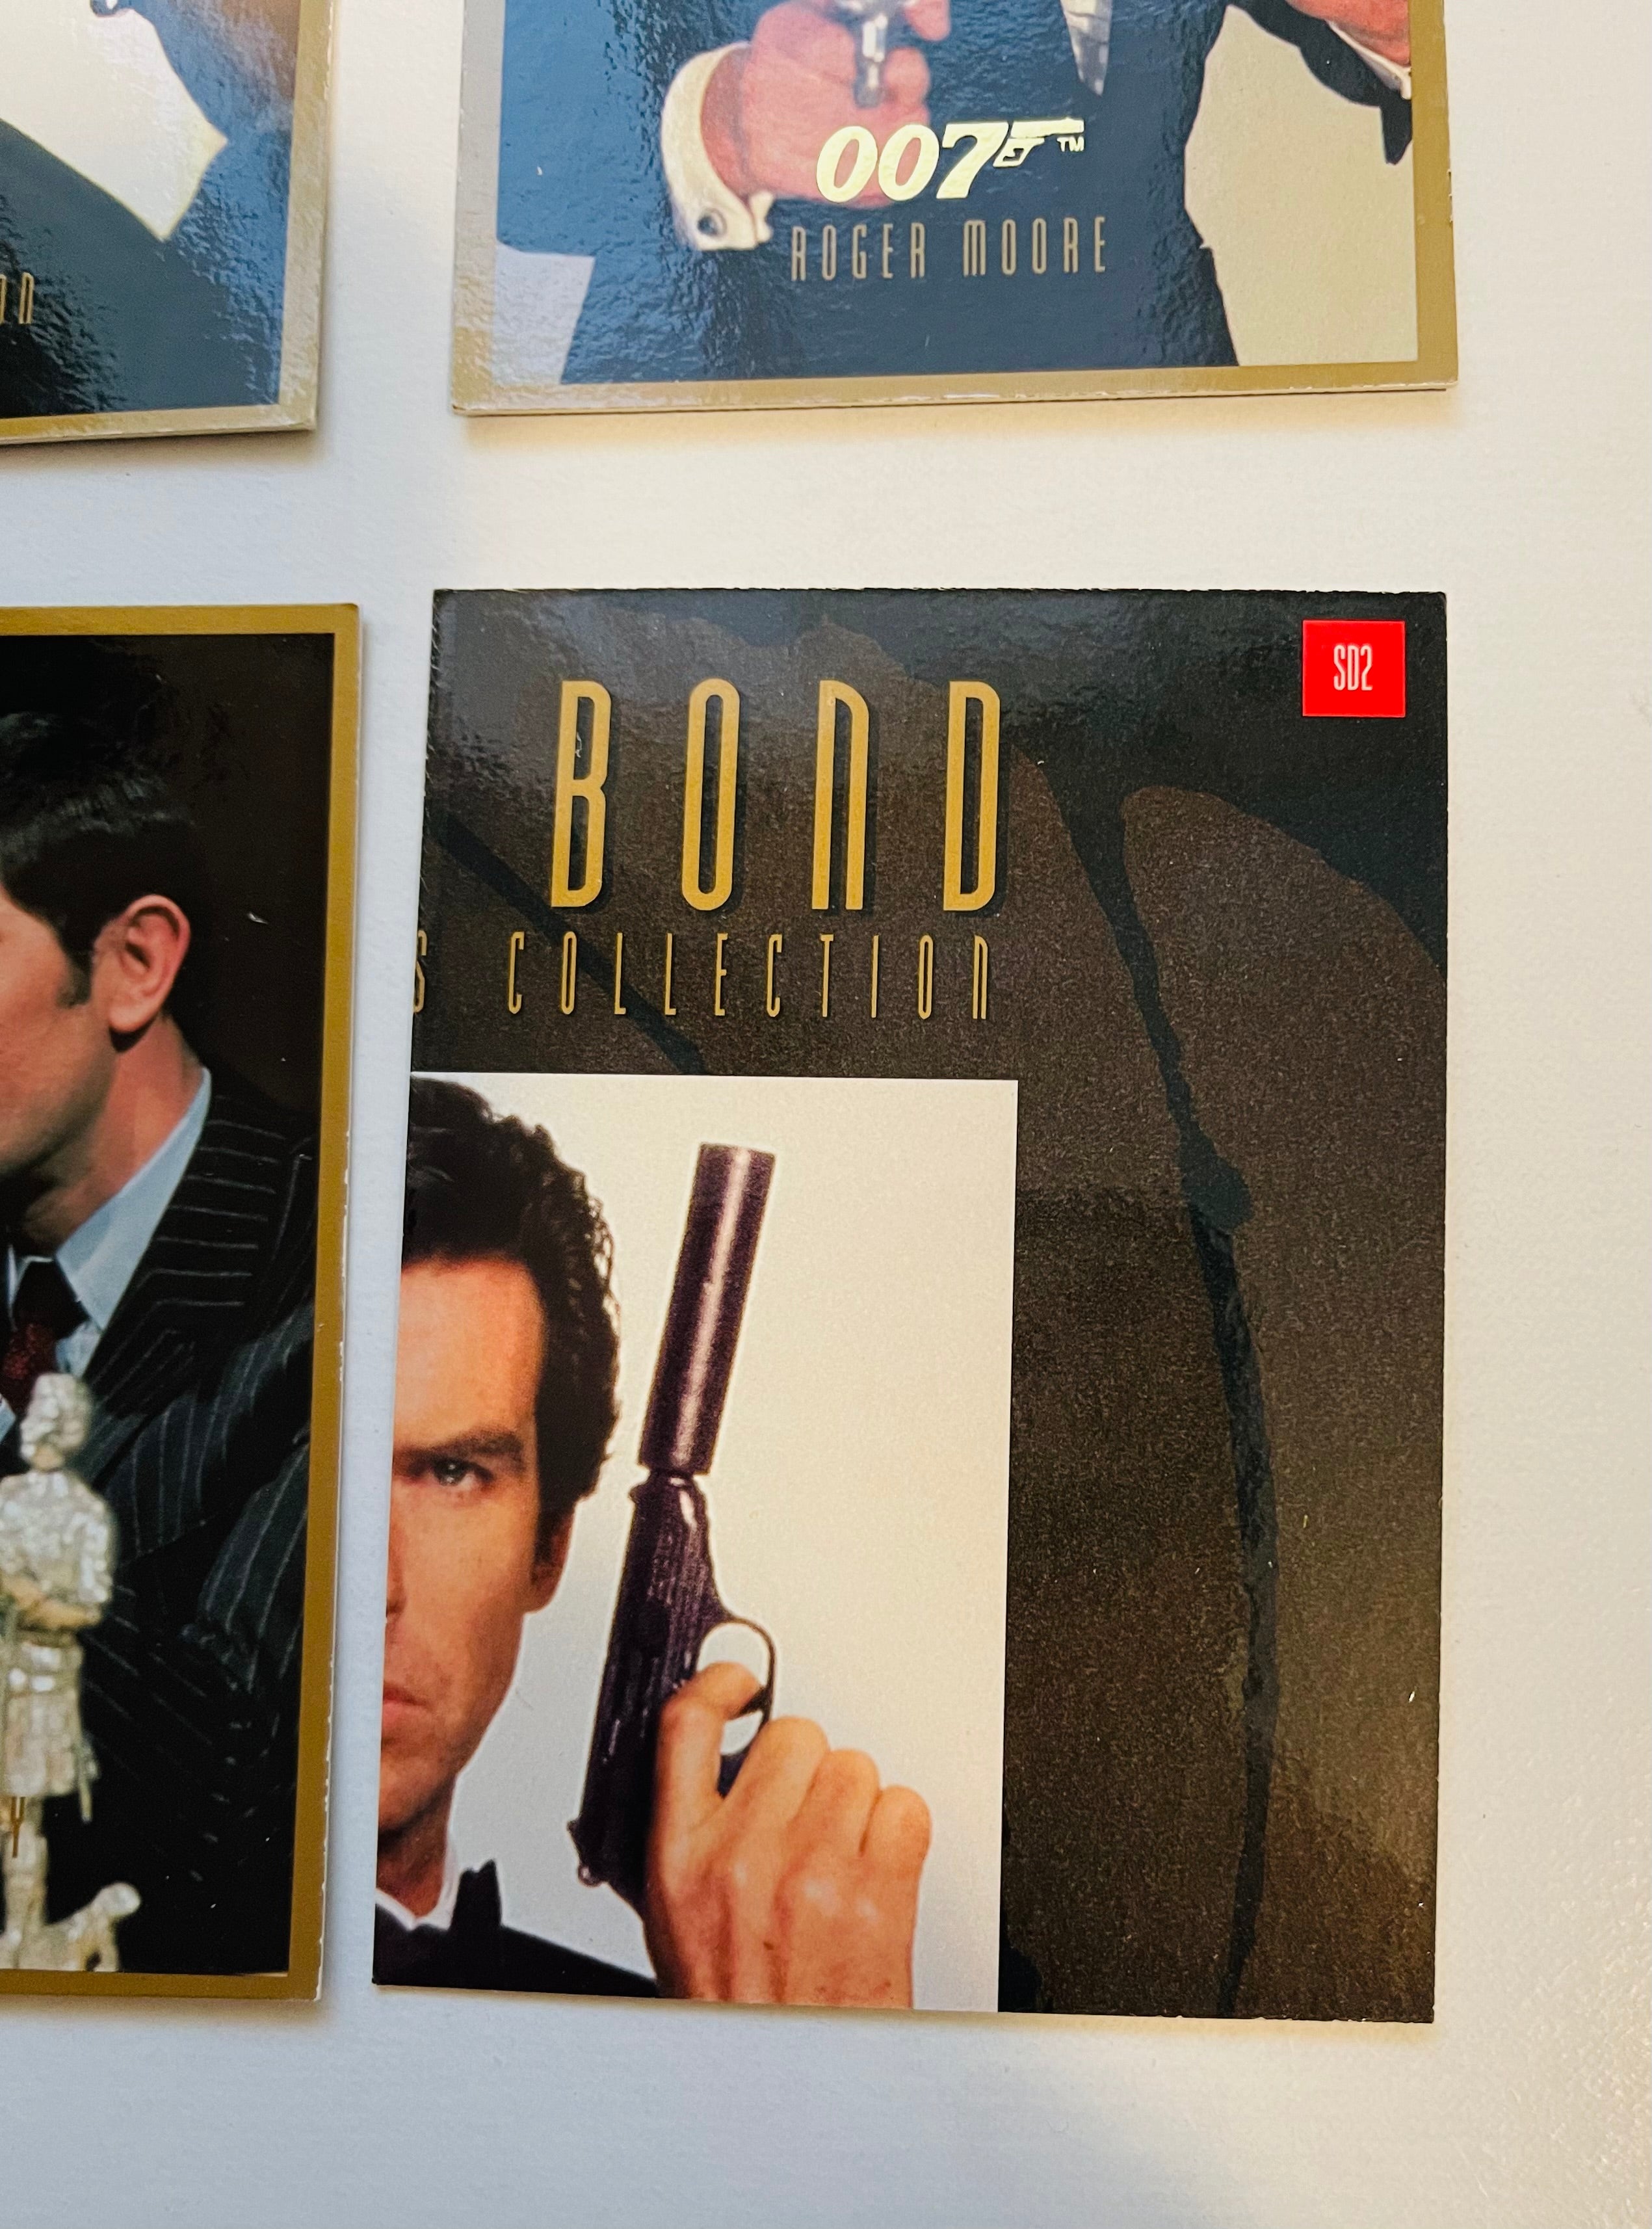 James Bond 4 Bonds rare special promo cards set 1990s